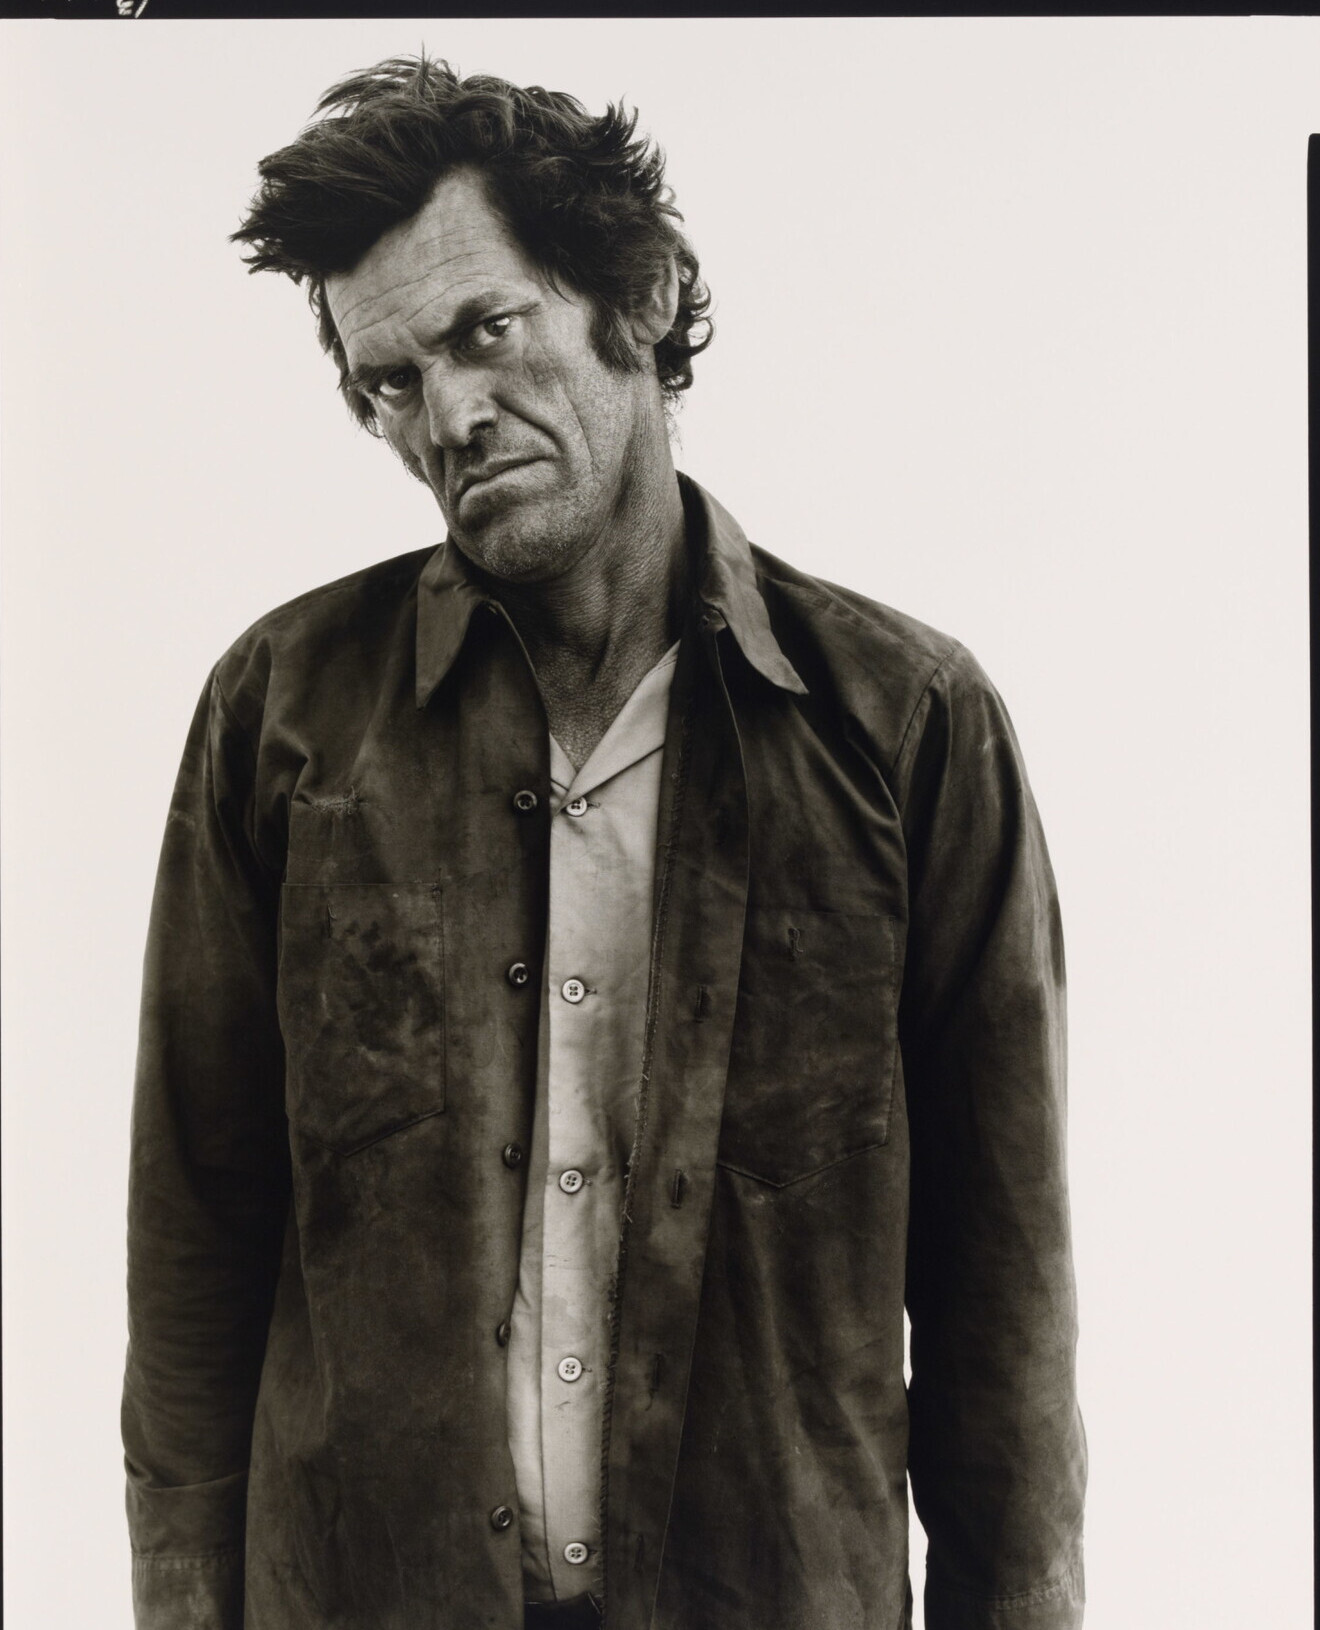 Джеймс Кимберлин, бродяга, State Road 18, Хоббс, Нью-Мексико, 1980 г. Фотограф Ричард Аведон